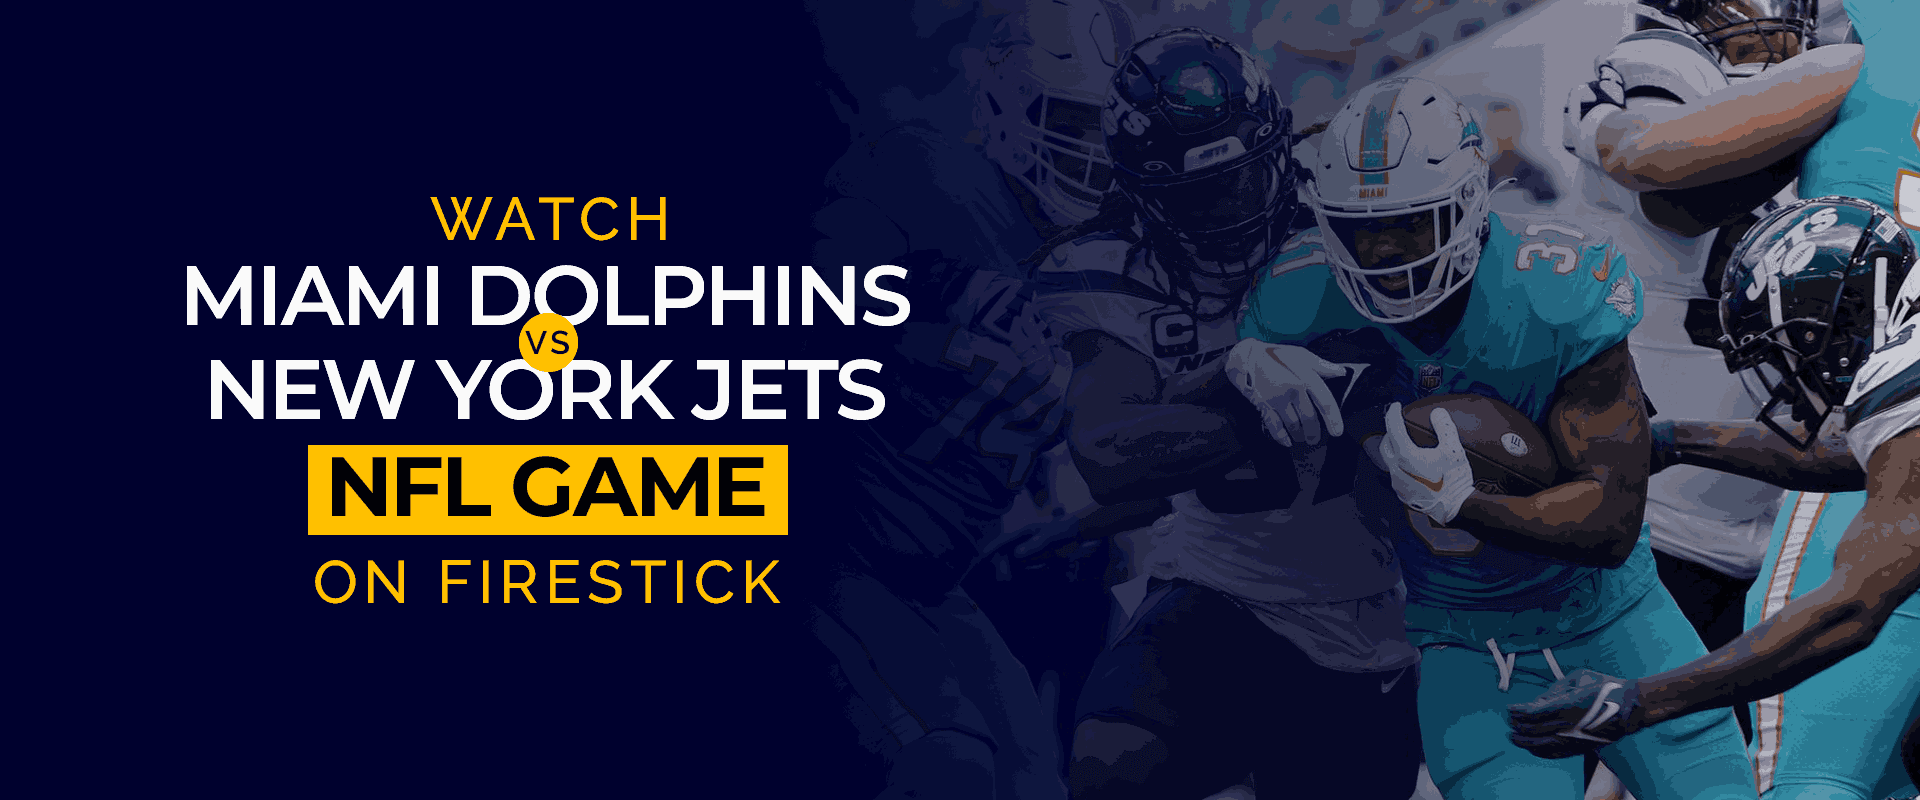 Guarda la partita NFL Miami Dolphins contro New York Jets in diretta su Firestick